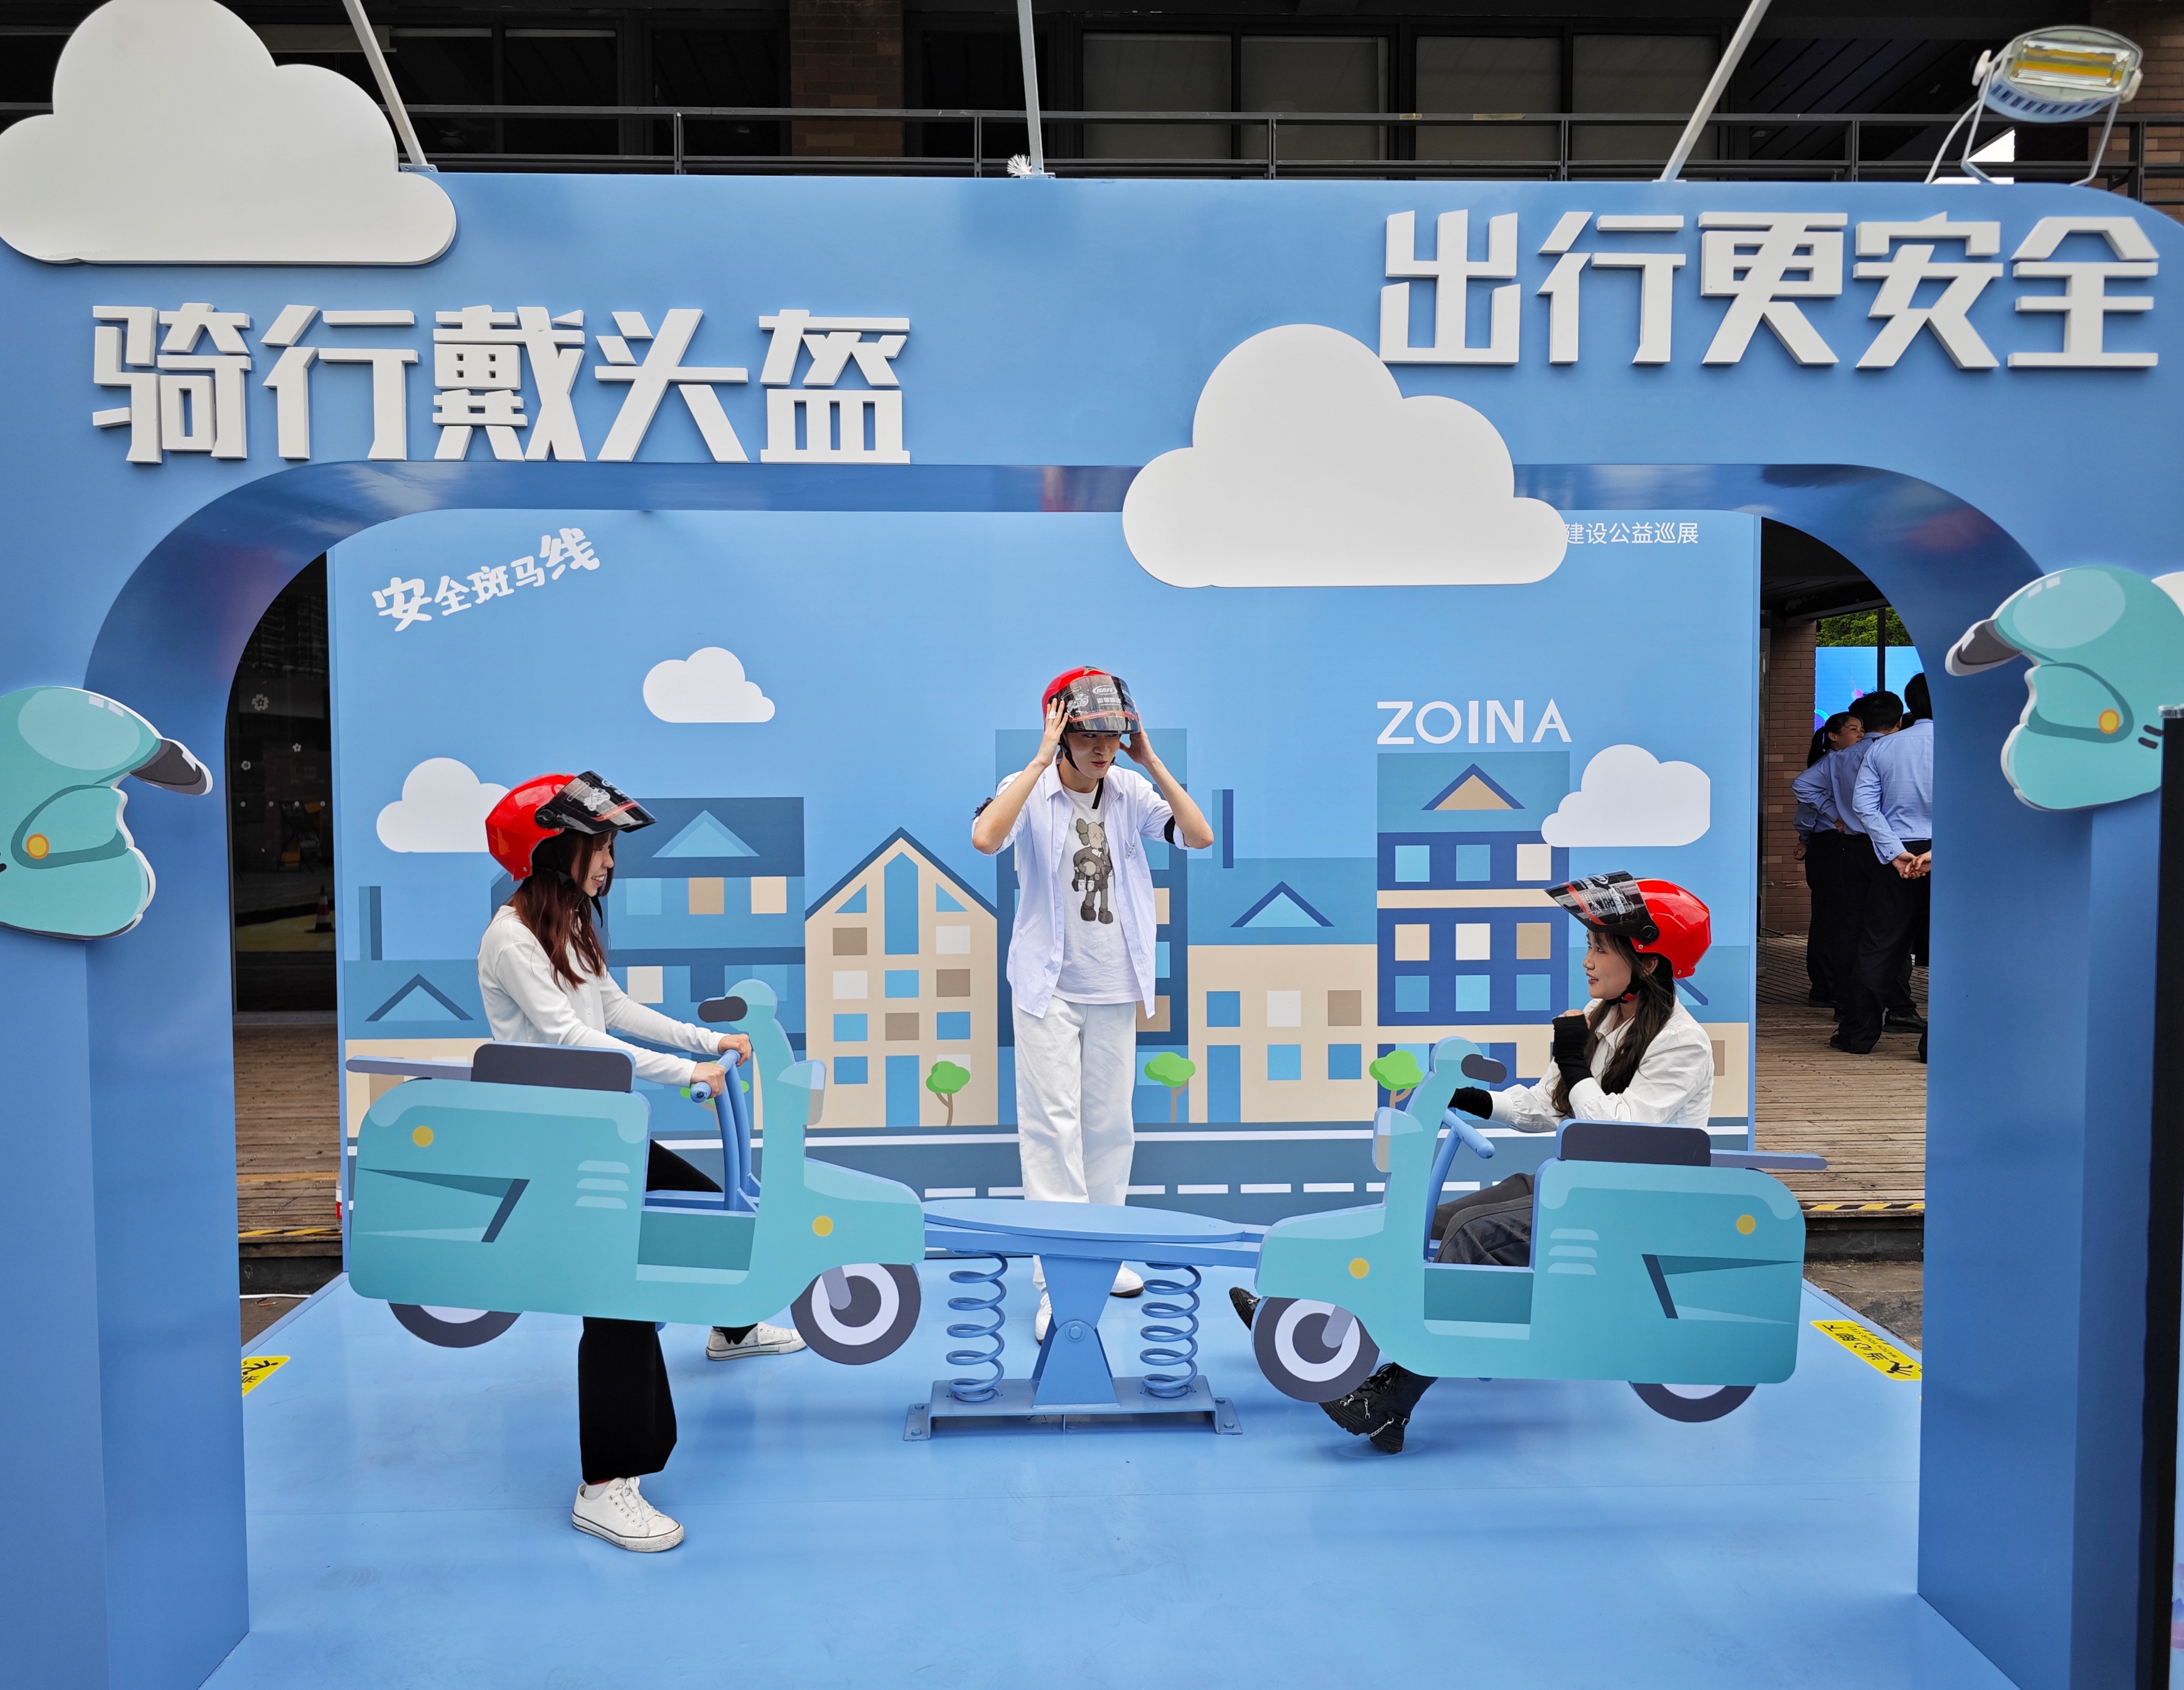 上海市道路交通安全文化建设公益巡展昨日启动